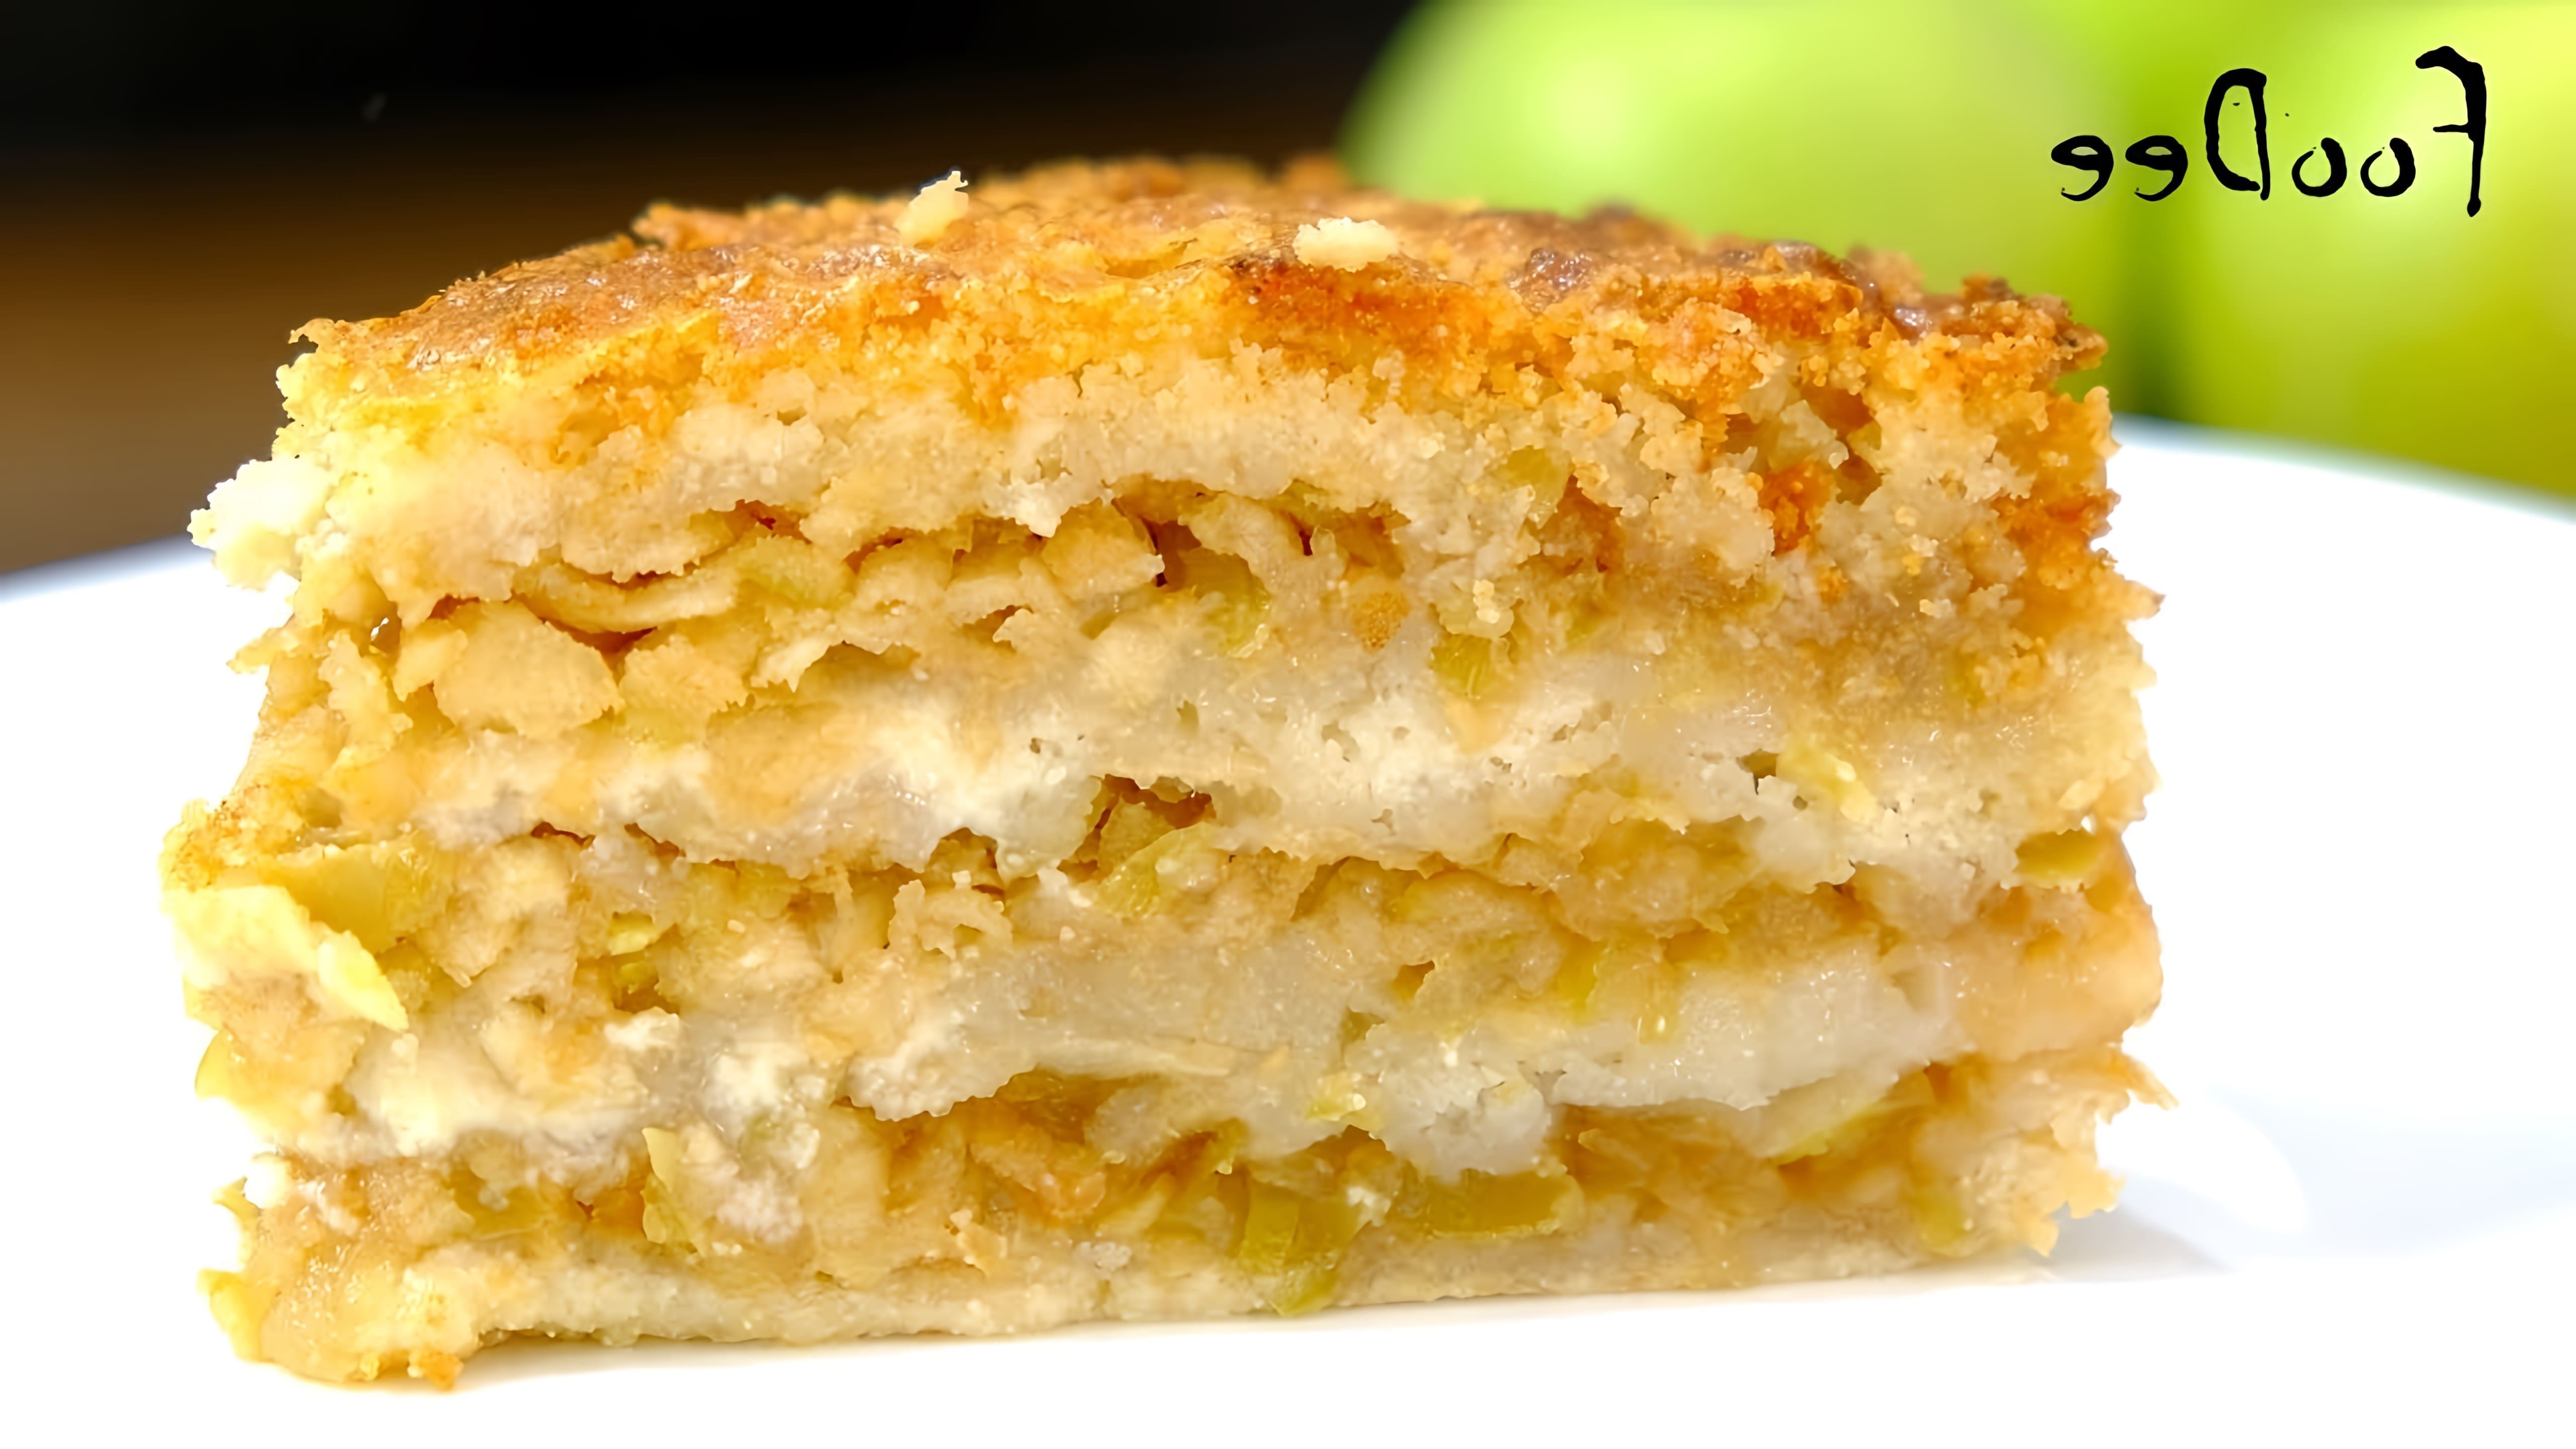 В этом видео демонстрируется рецепт болгарского насыпного пирога с яблоками